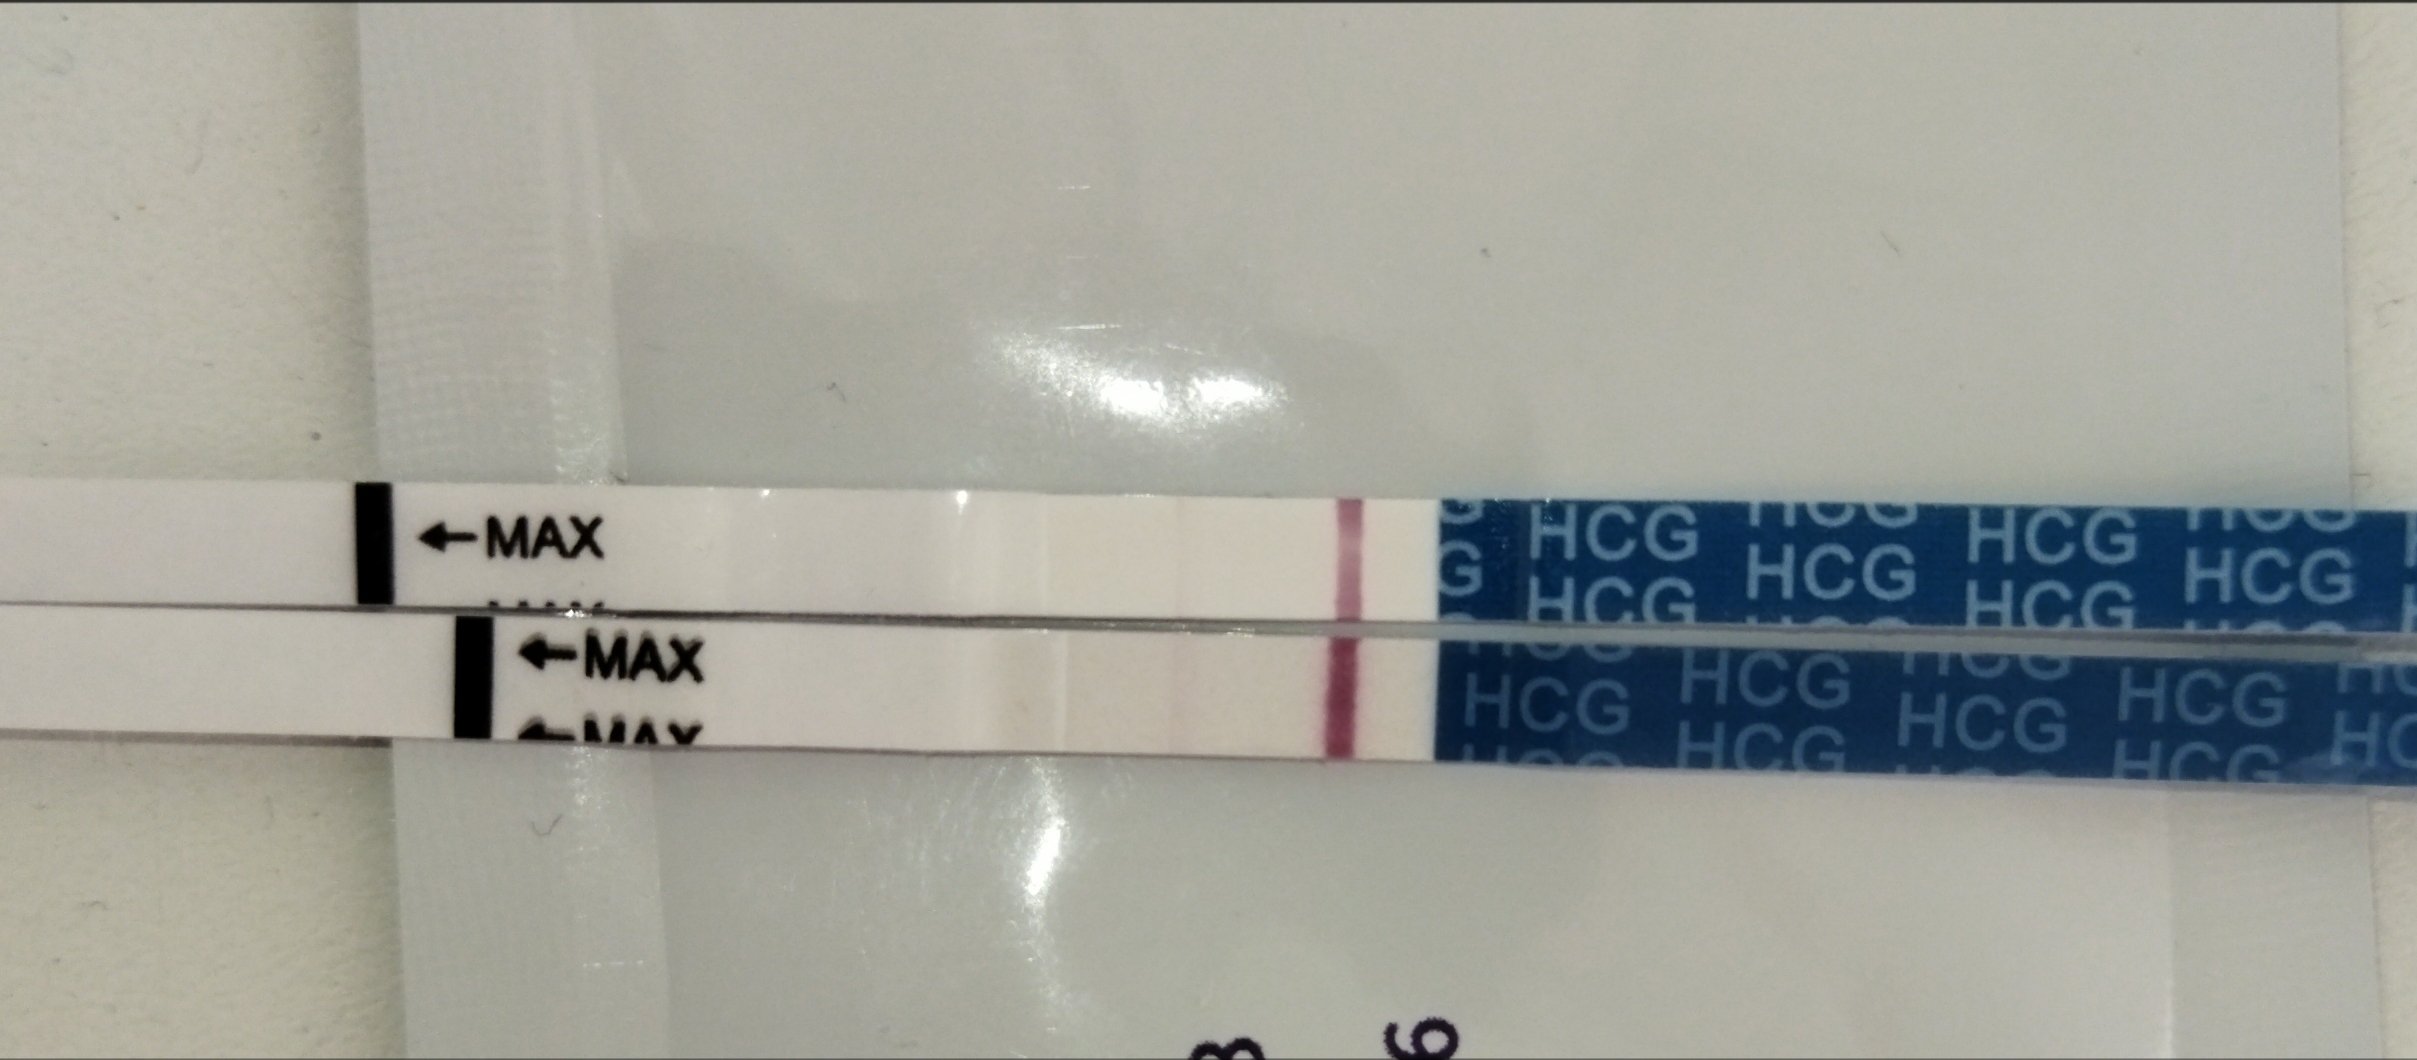 Задержка 26 дней. 27 ДЦ тест слабоположительный. 11 ДПО 26 ДЦ. 4 ДПО тест слабоположительный. 29 День цикла тест на беременность слабоположительный.